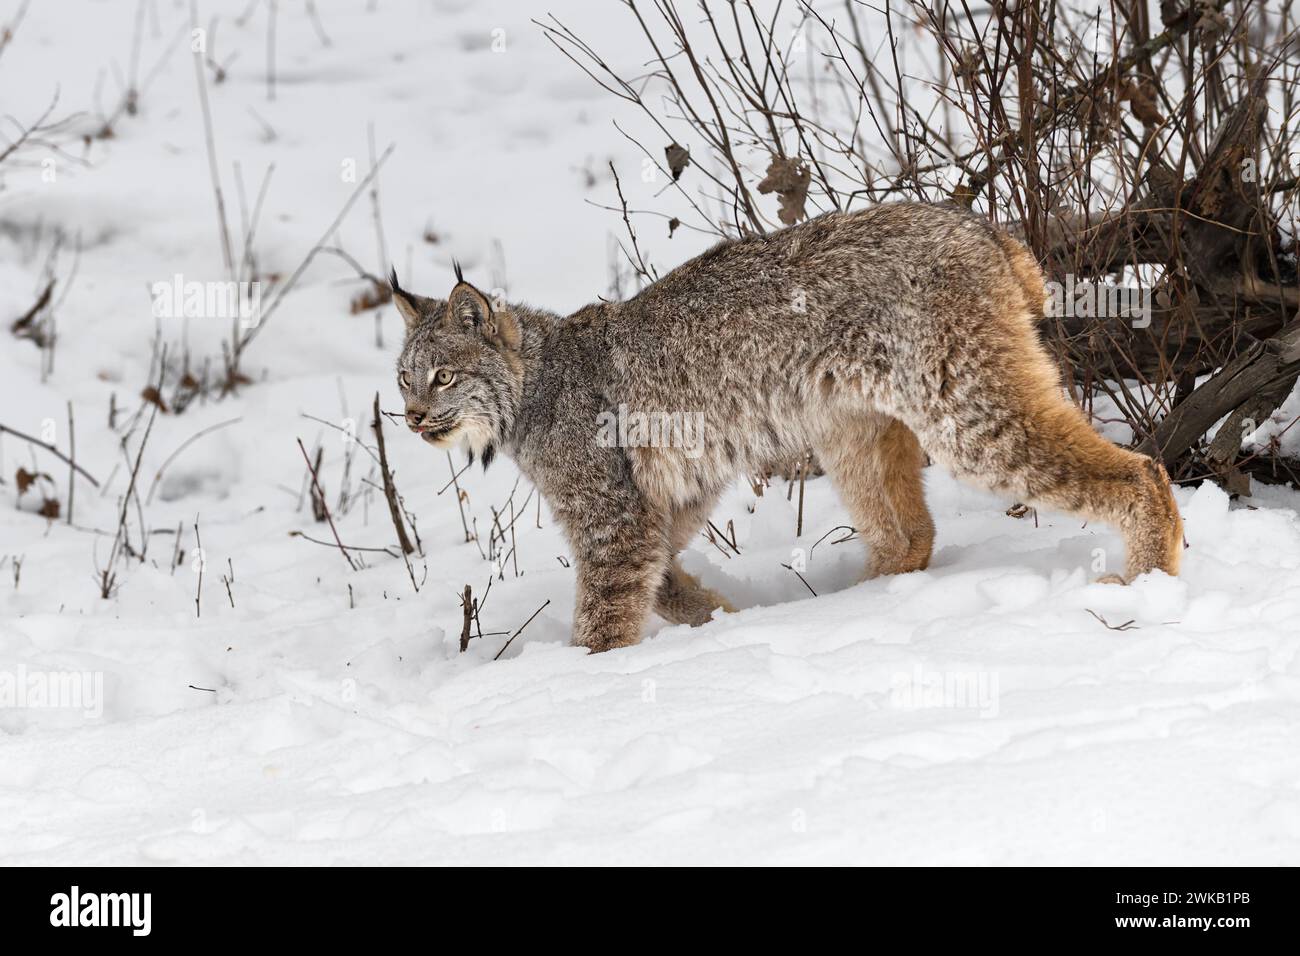 La lince canadese (Lynx canadensis) cammina la lingua sinistra tira fuori l'inverno - animale in cattività Foto Stock